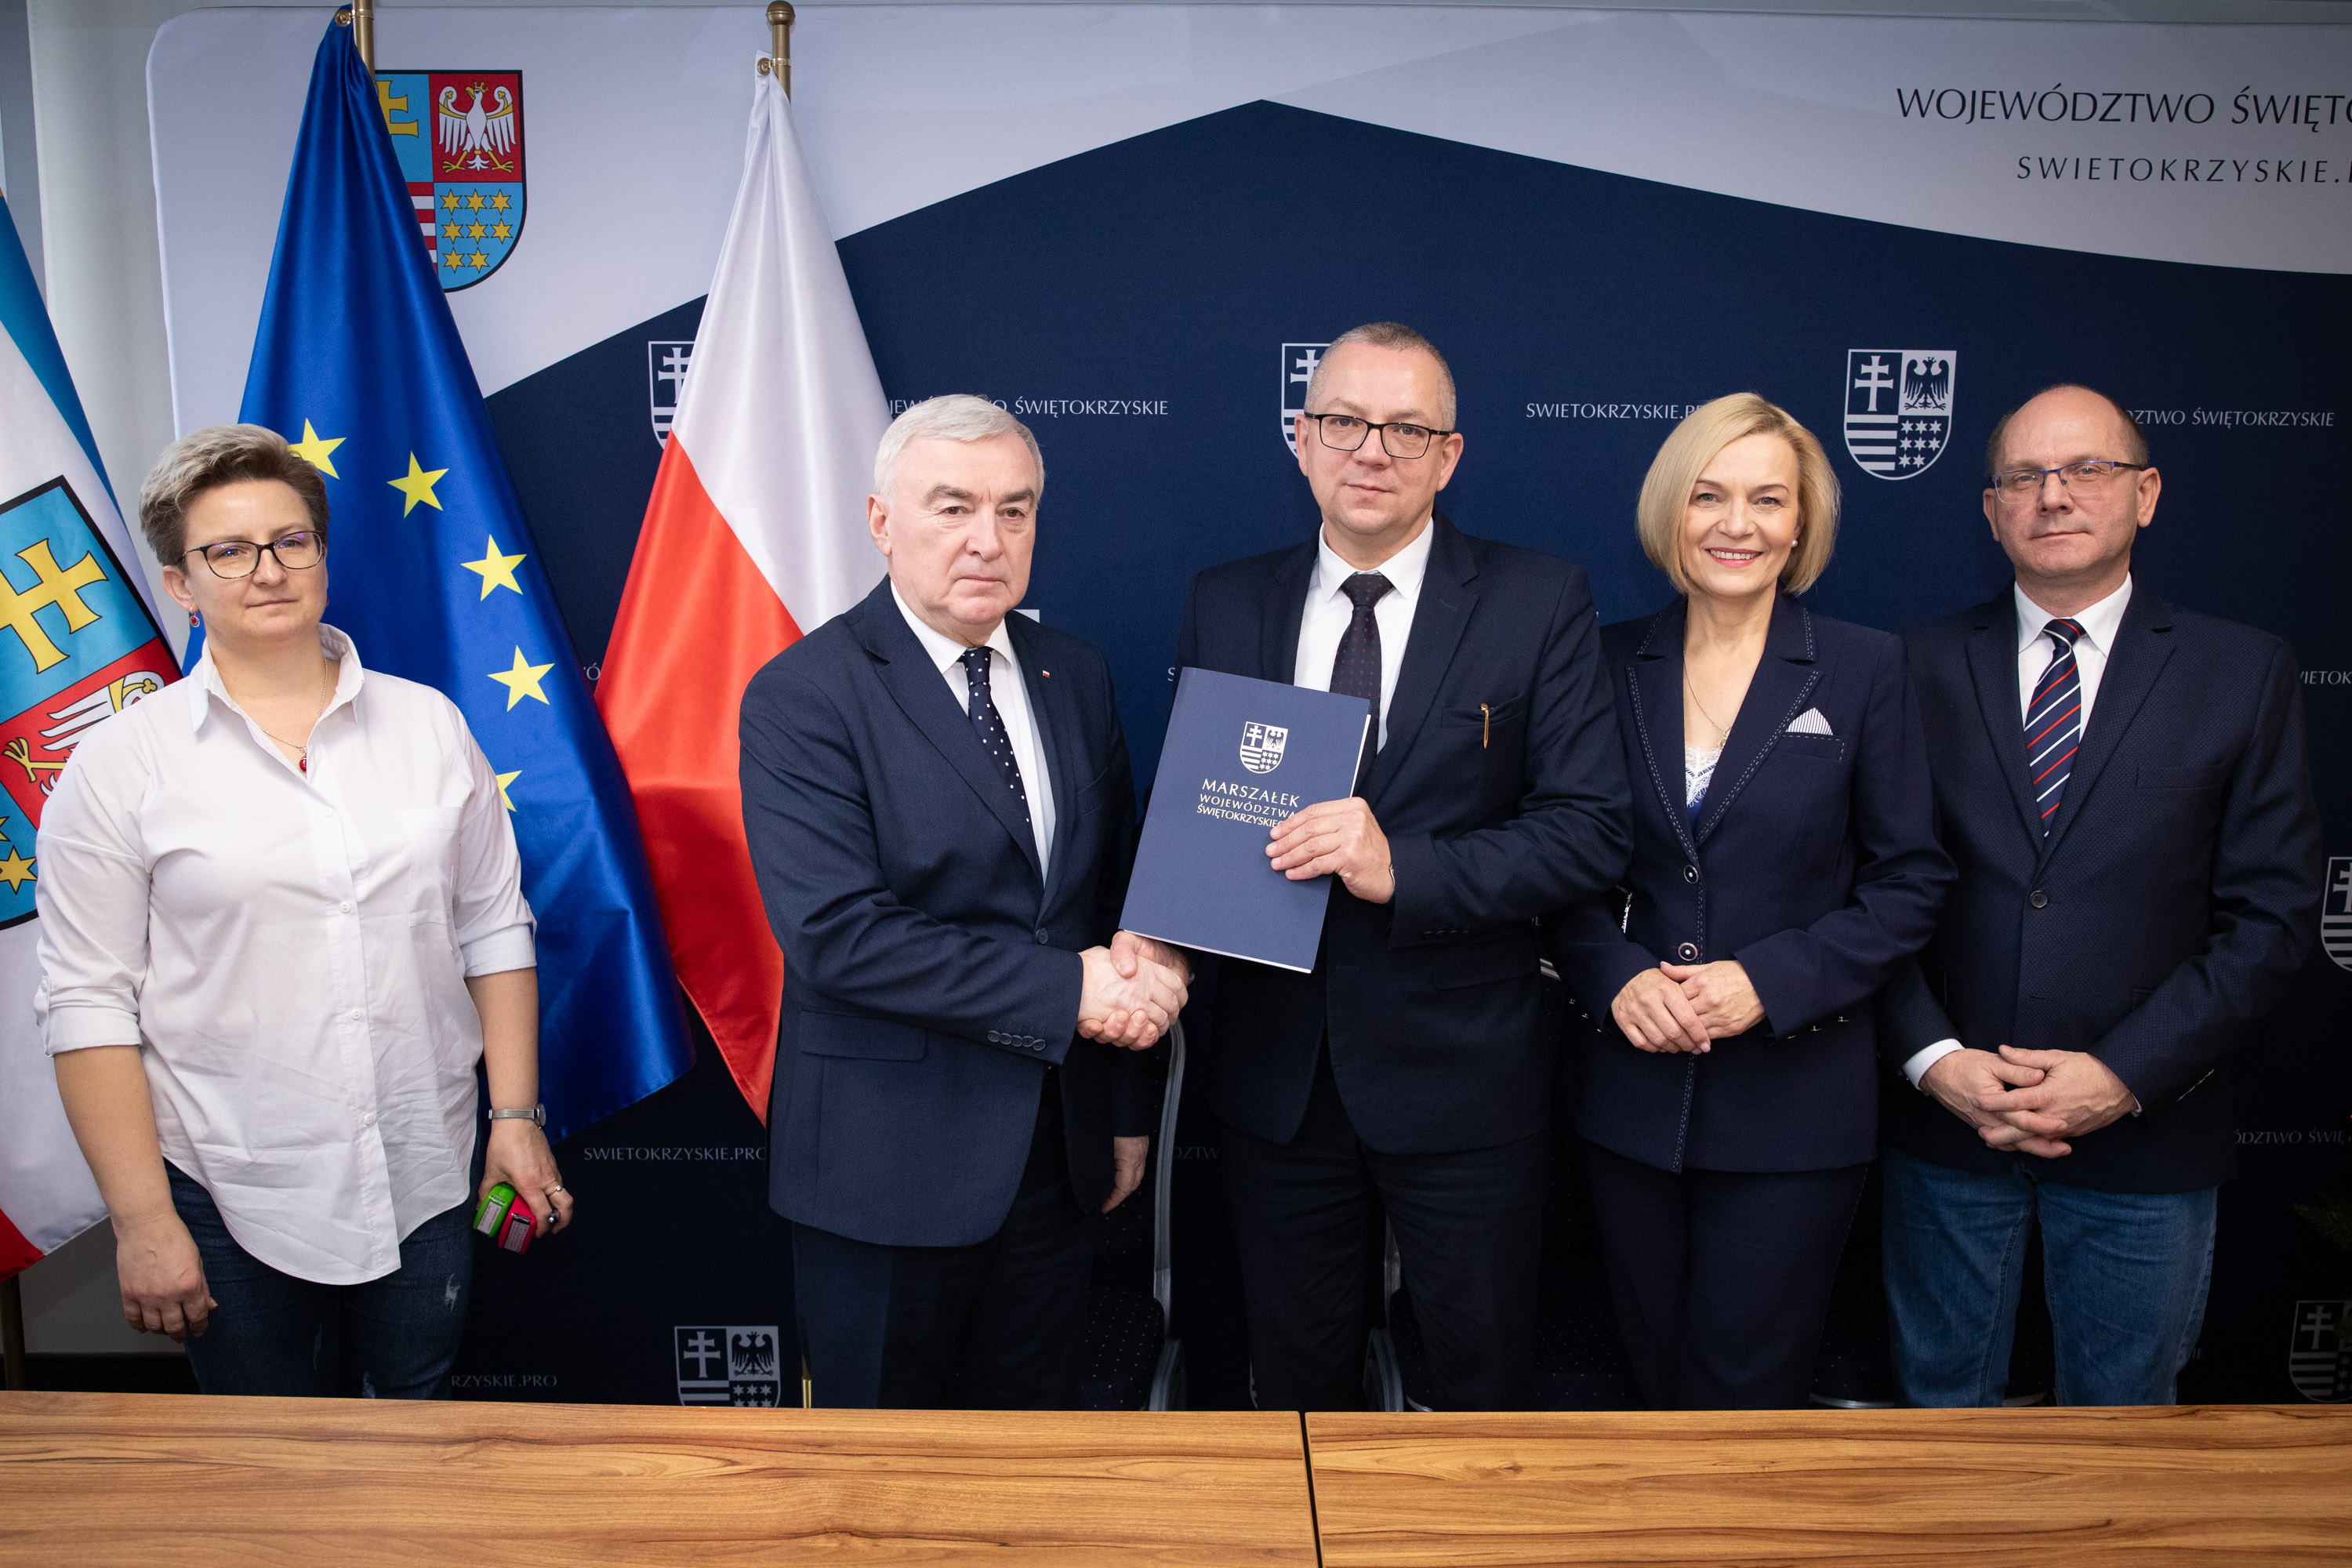 Marszałek Andrzej Bętkowski i Wicemarszałek Renata Janik gratulują włodarzowi podpisania umowy